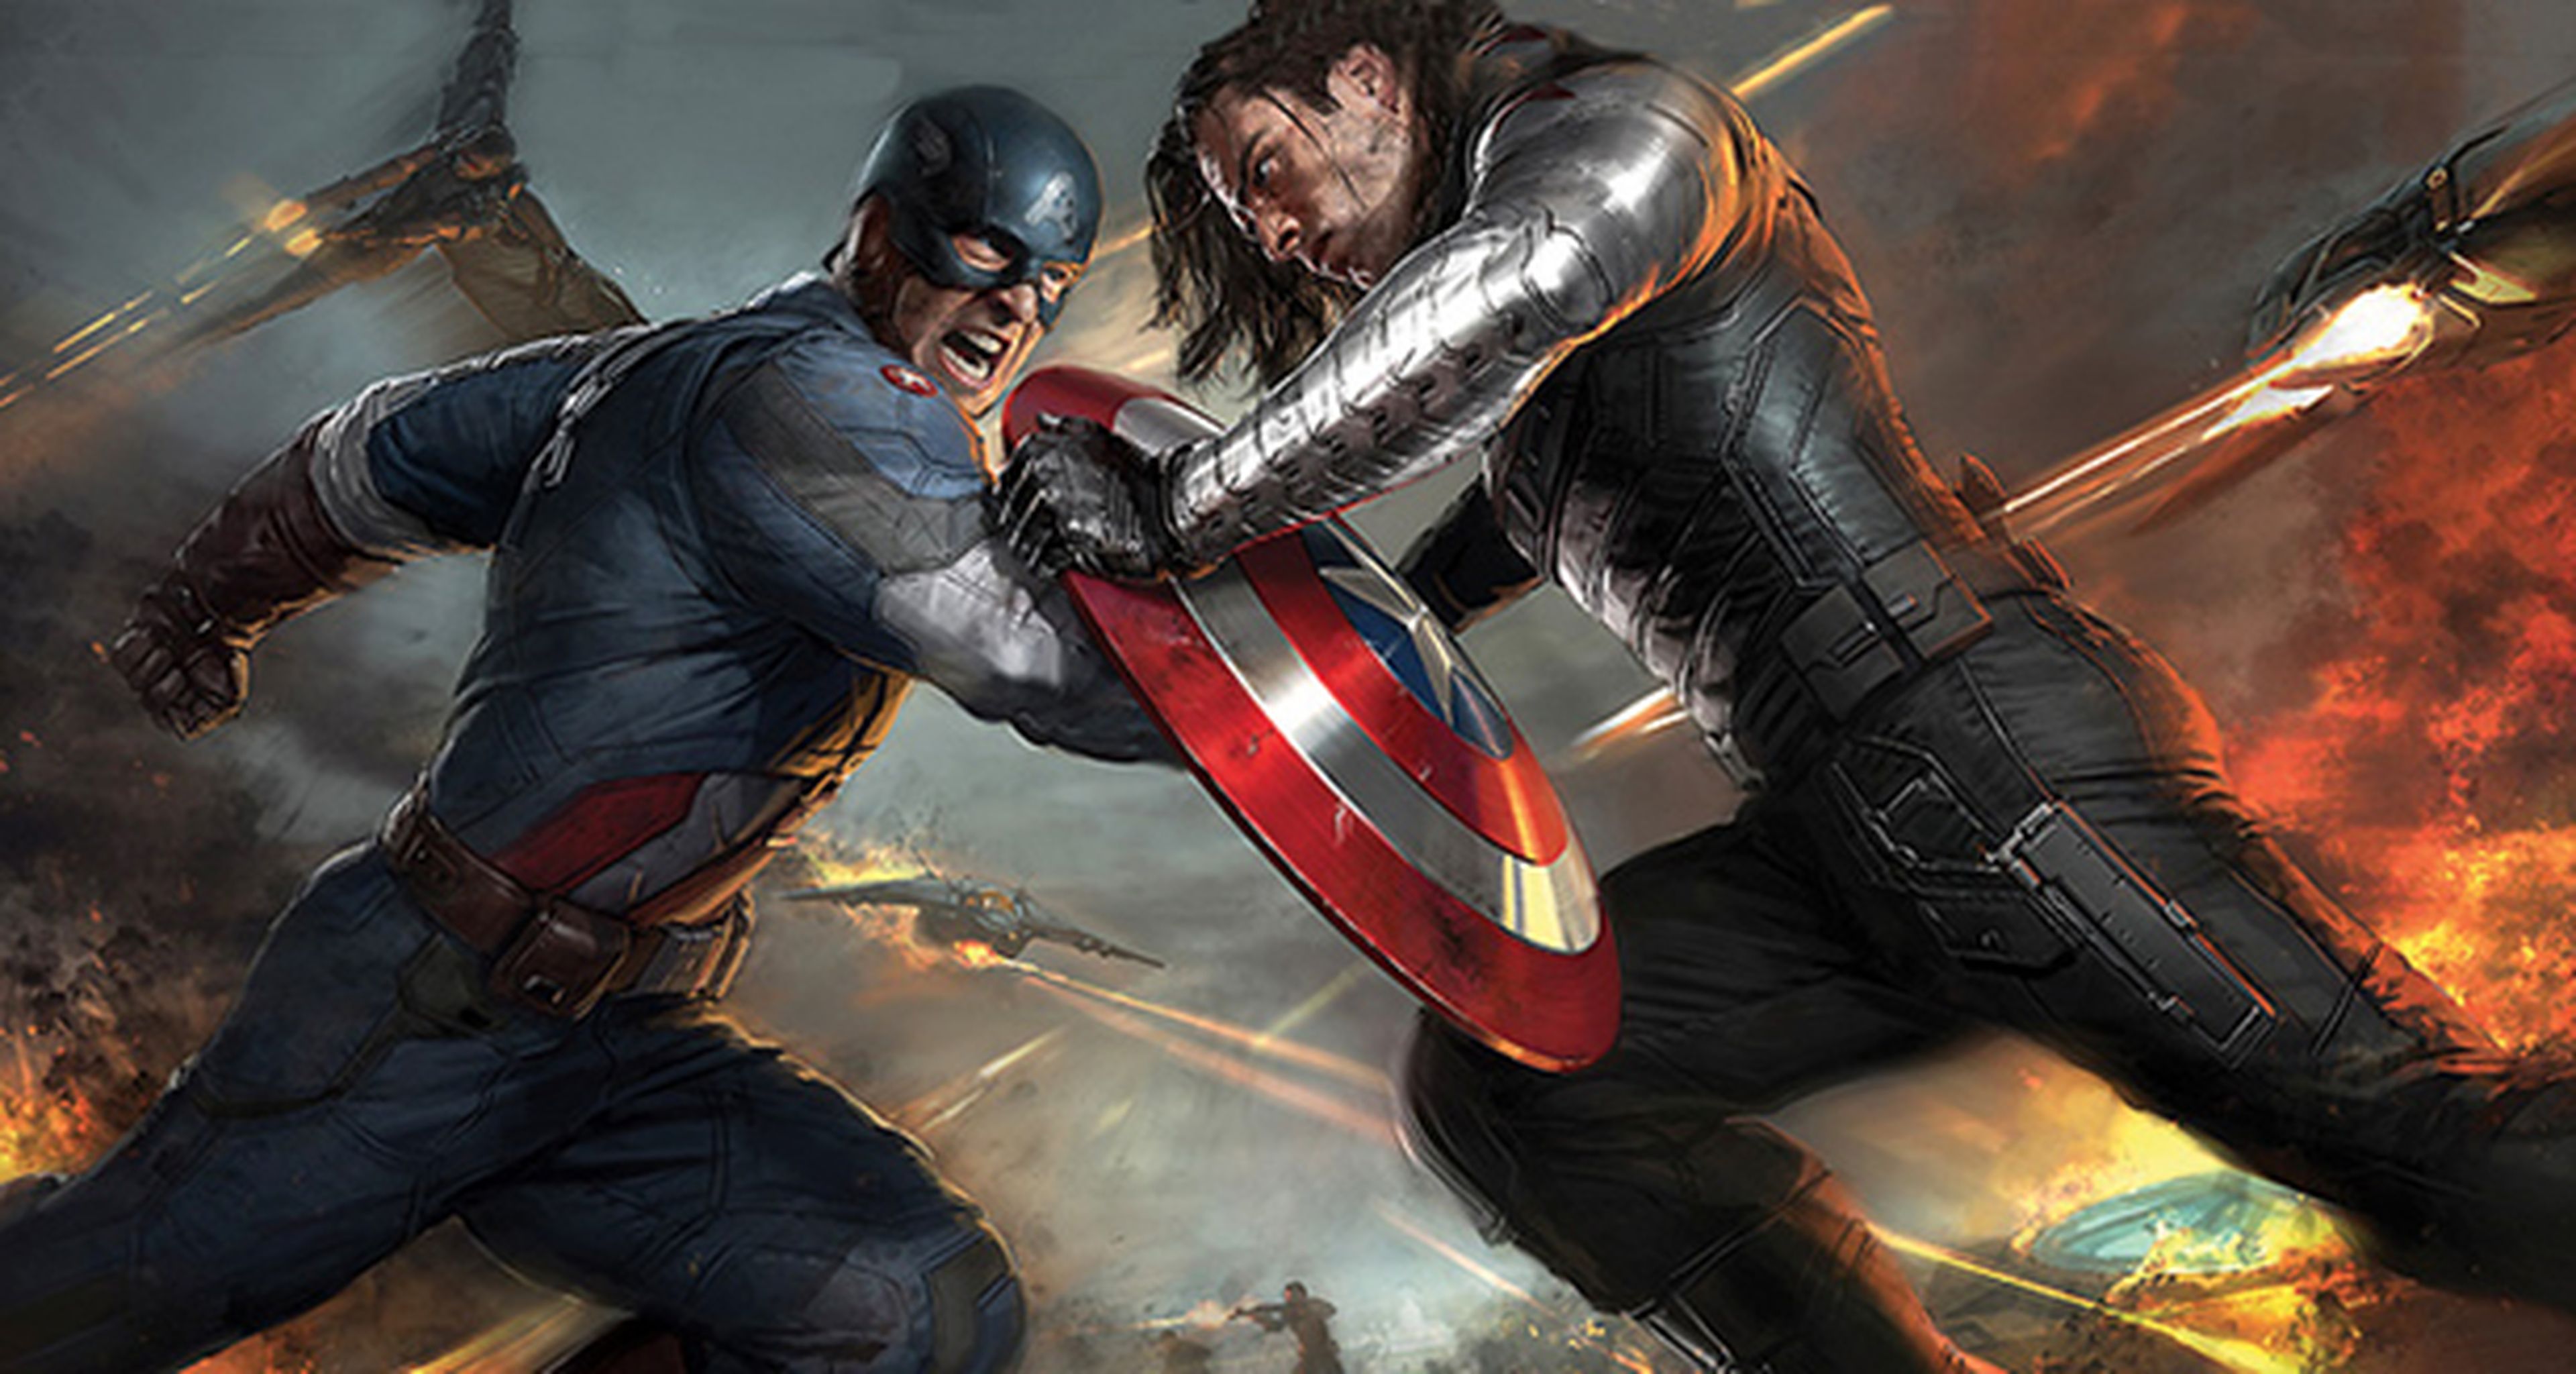 Español posponer Sierra Ed Brubaker alaba el guión de El Capitán América 2 | Hobby Consolas